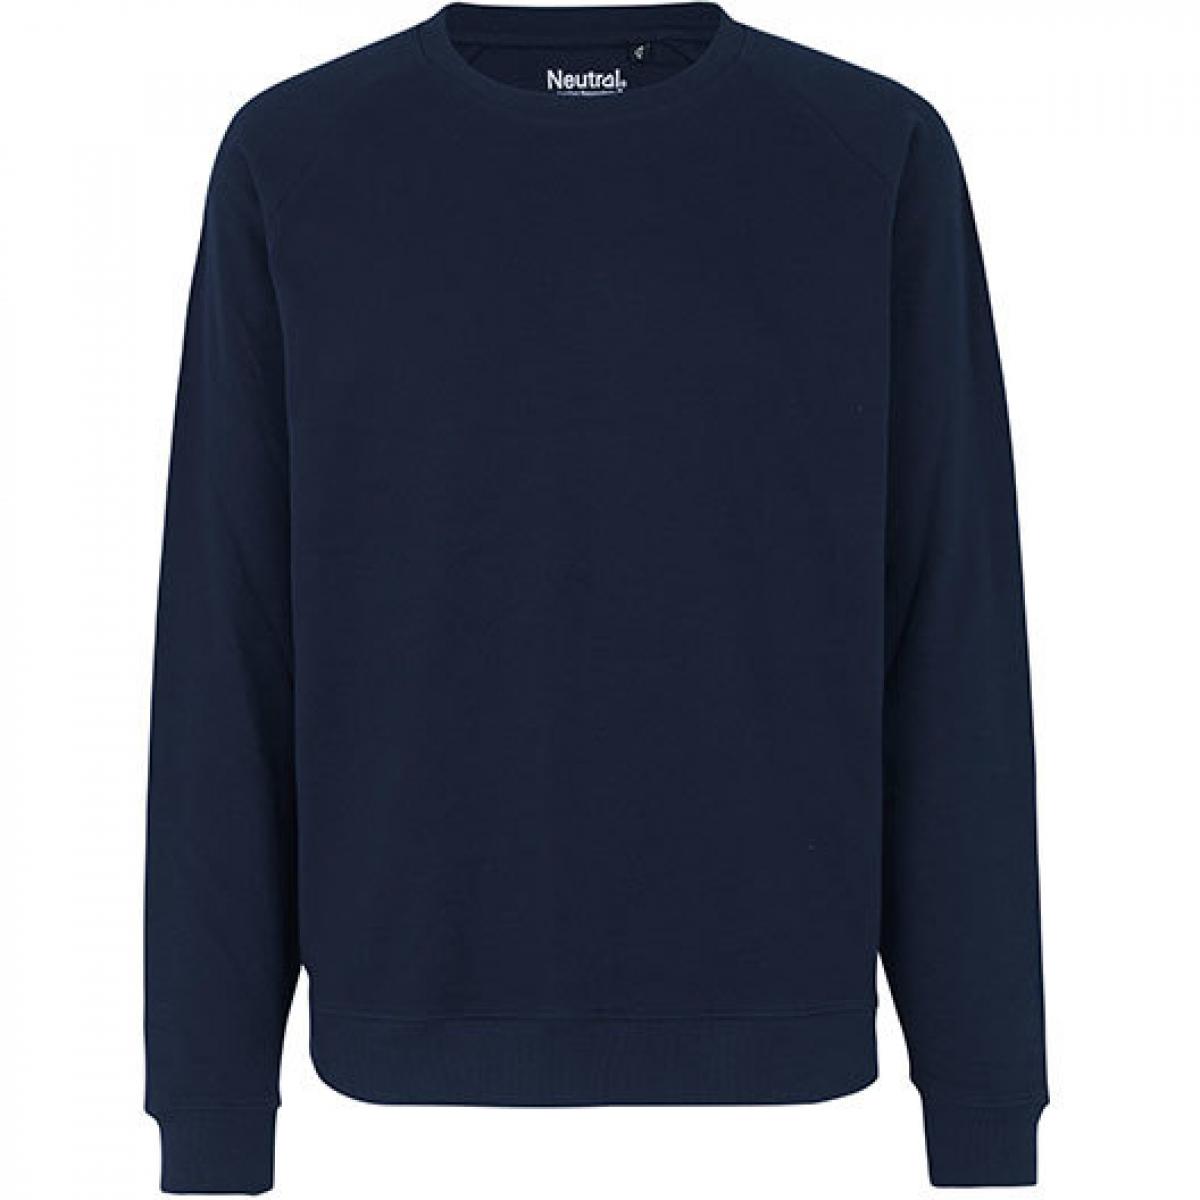 Hersteller: Neutral Herstellernummer: O69301 Artikelbezeichnung: Herren Workwear Sweatshirt - 80 % Bio-Baumwolle Farbe: Navy